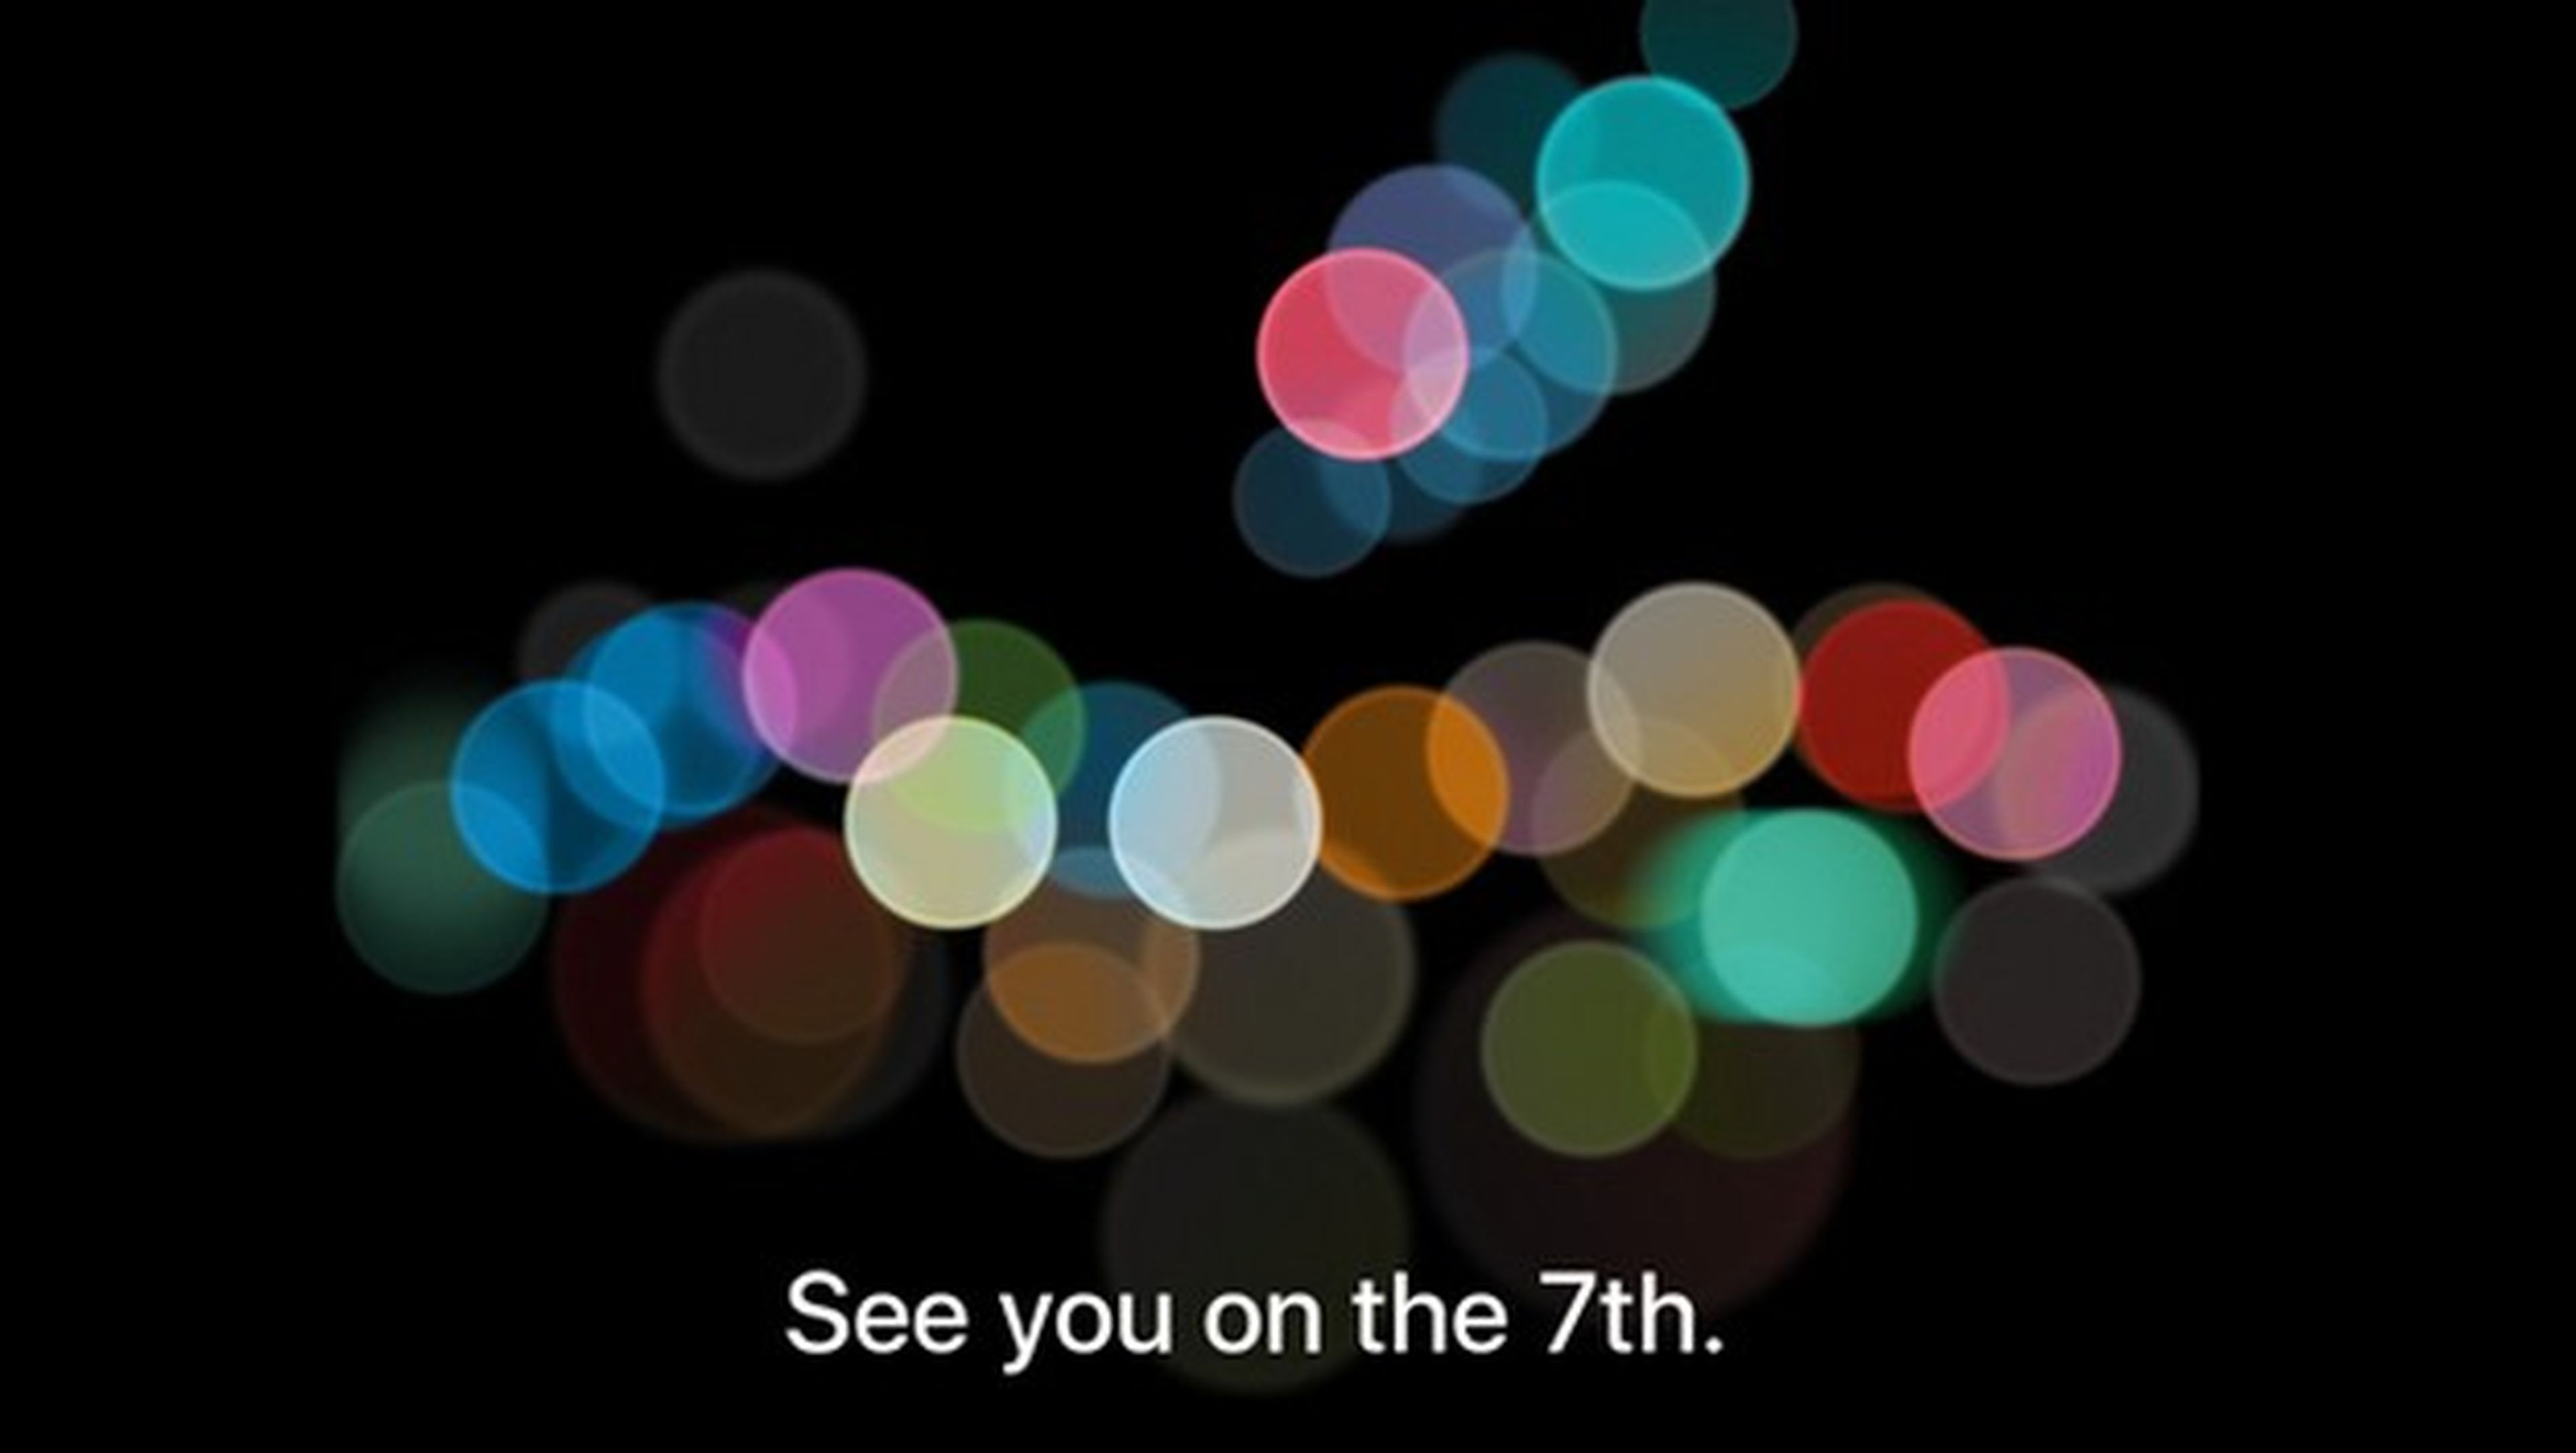 iPhone 7 se presentará el 7 de septiembre, Apple lo confirma